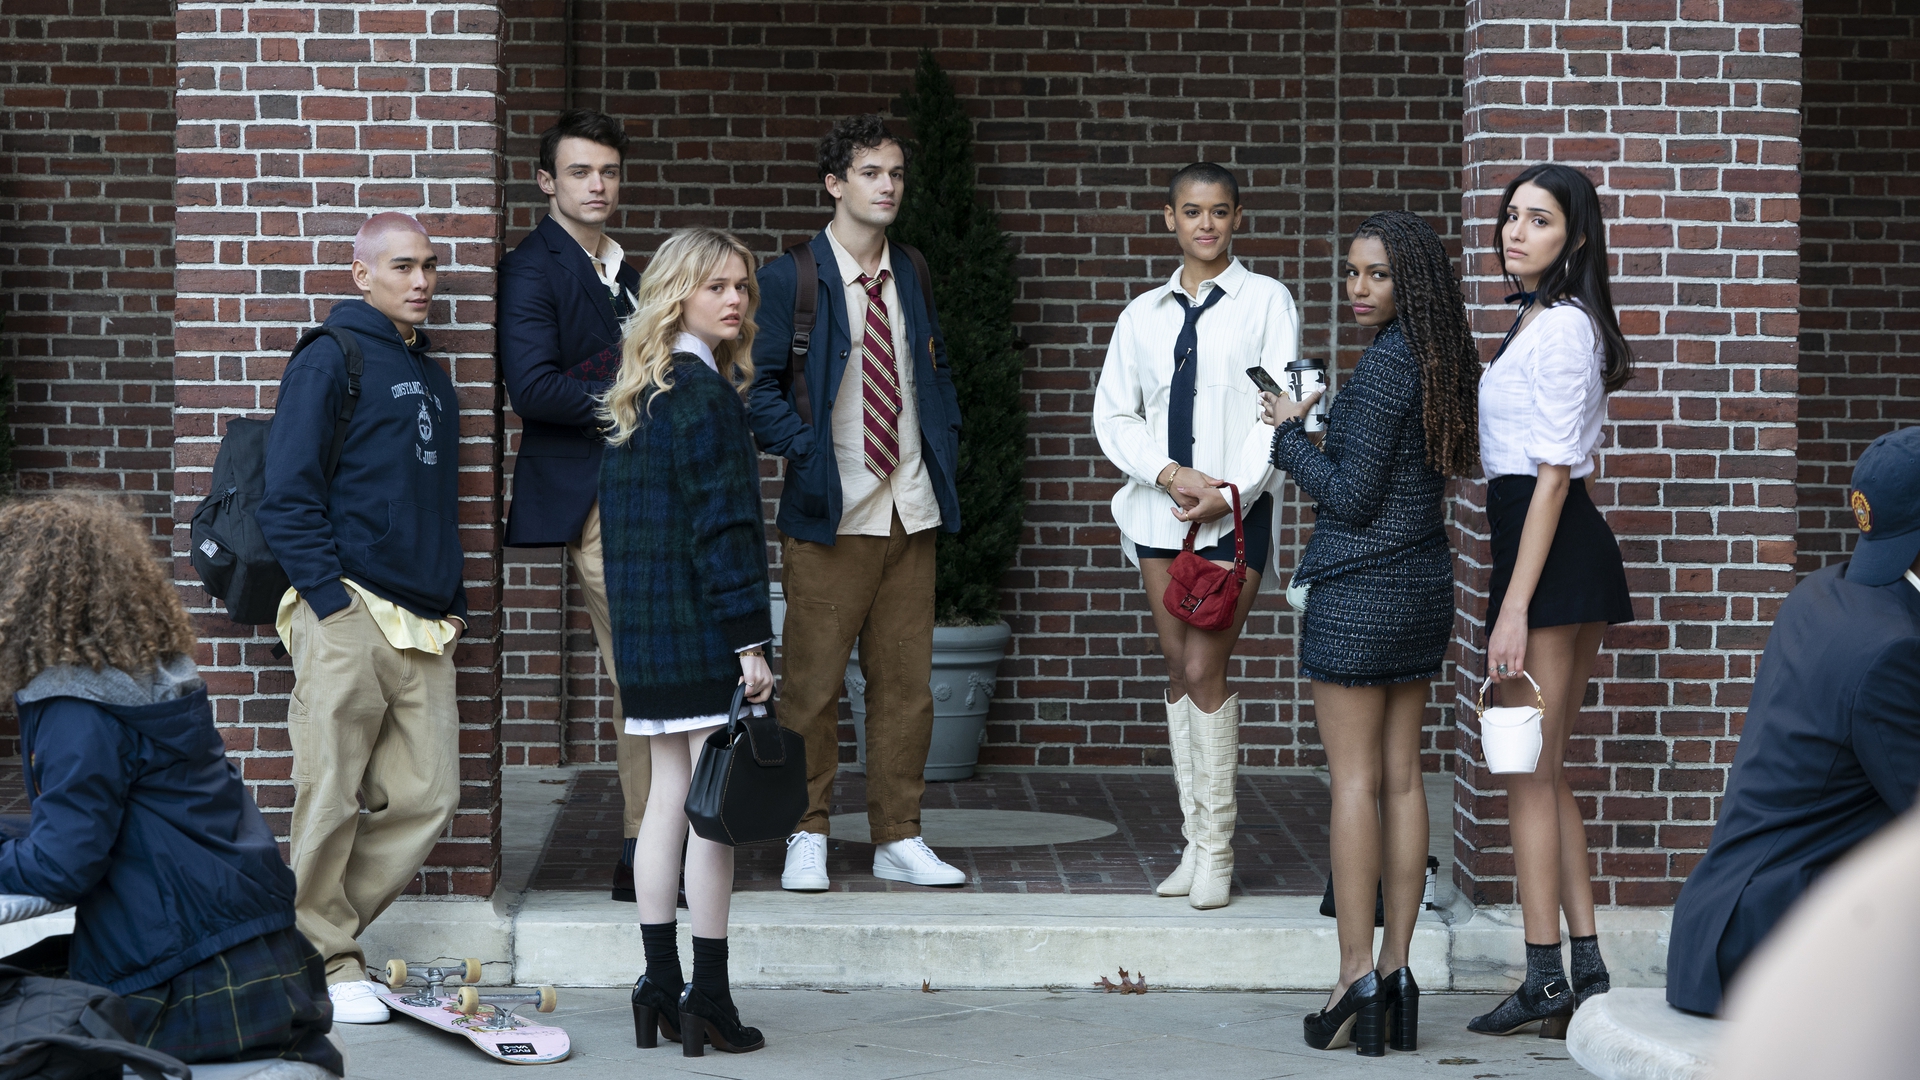 La serie adolescente Gossip Girl reinició su historia en HBO Max